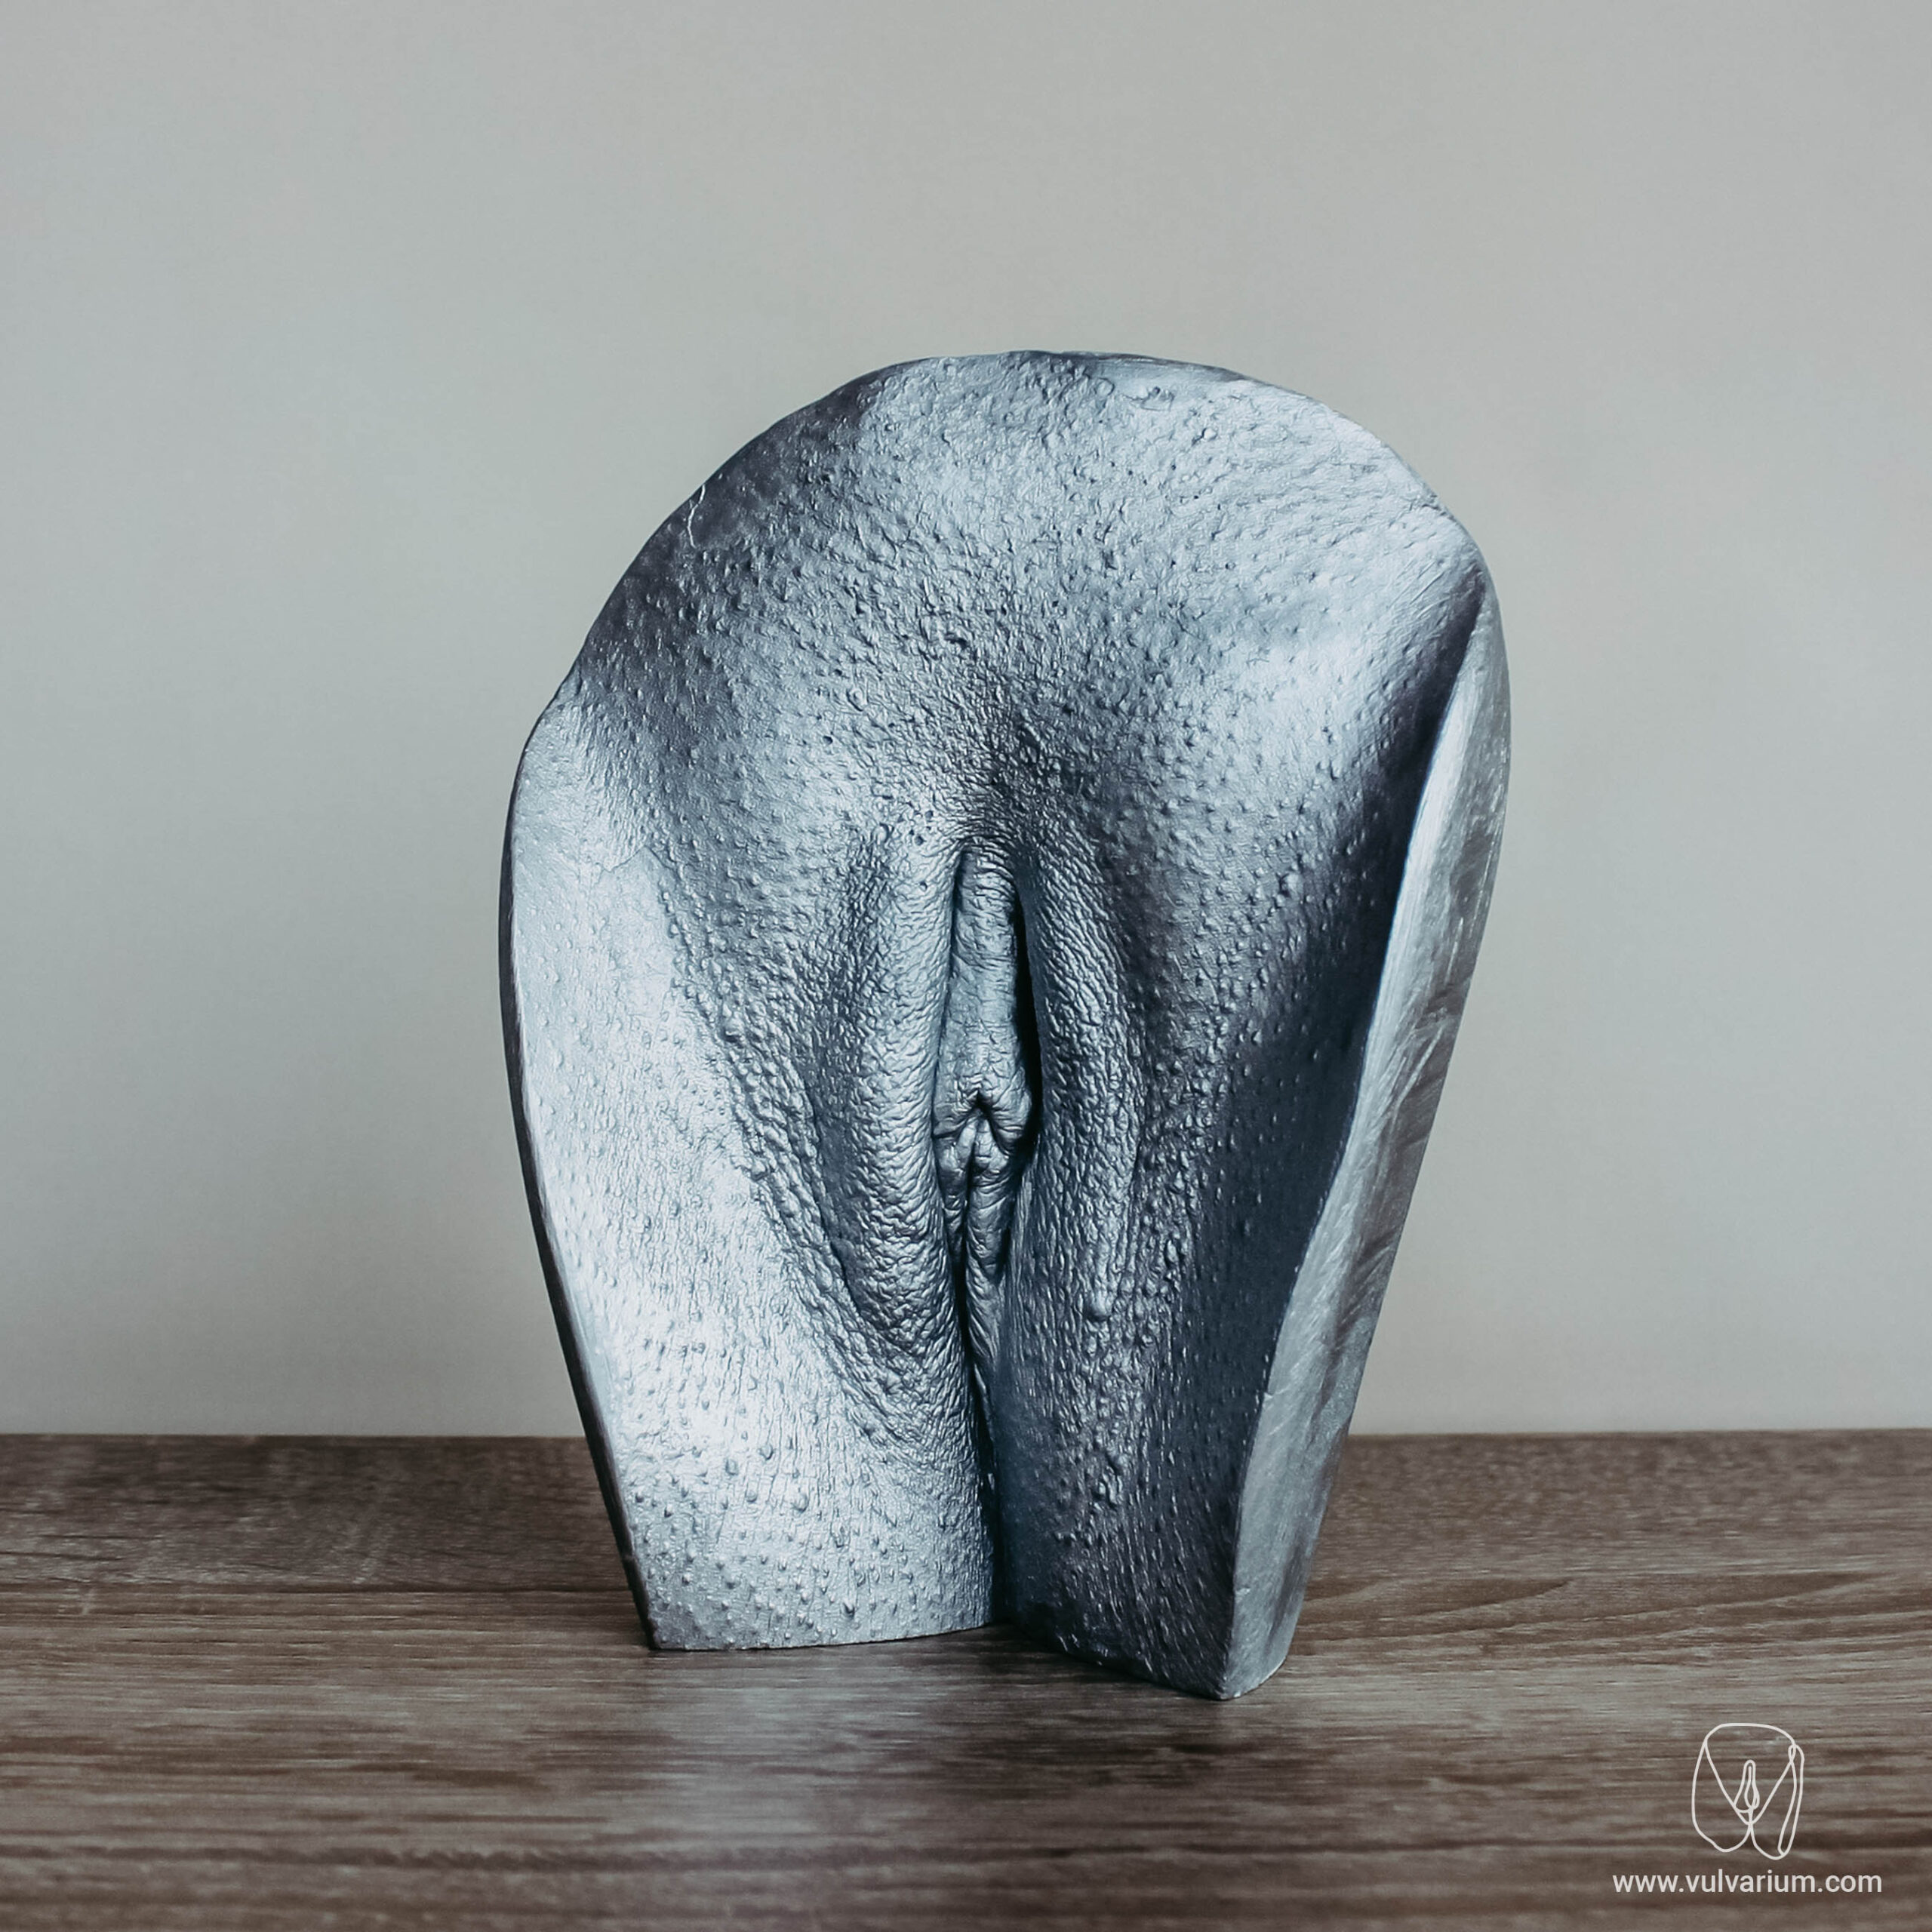 vulva casting - vulvarium